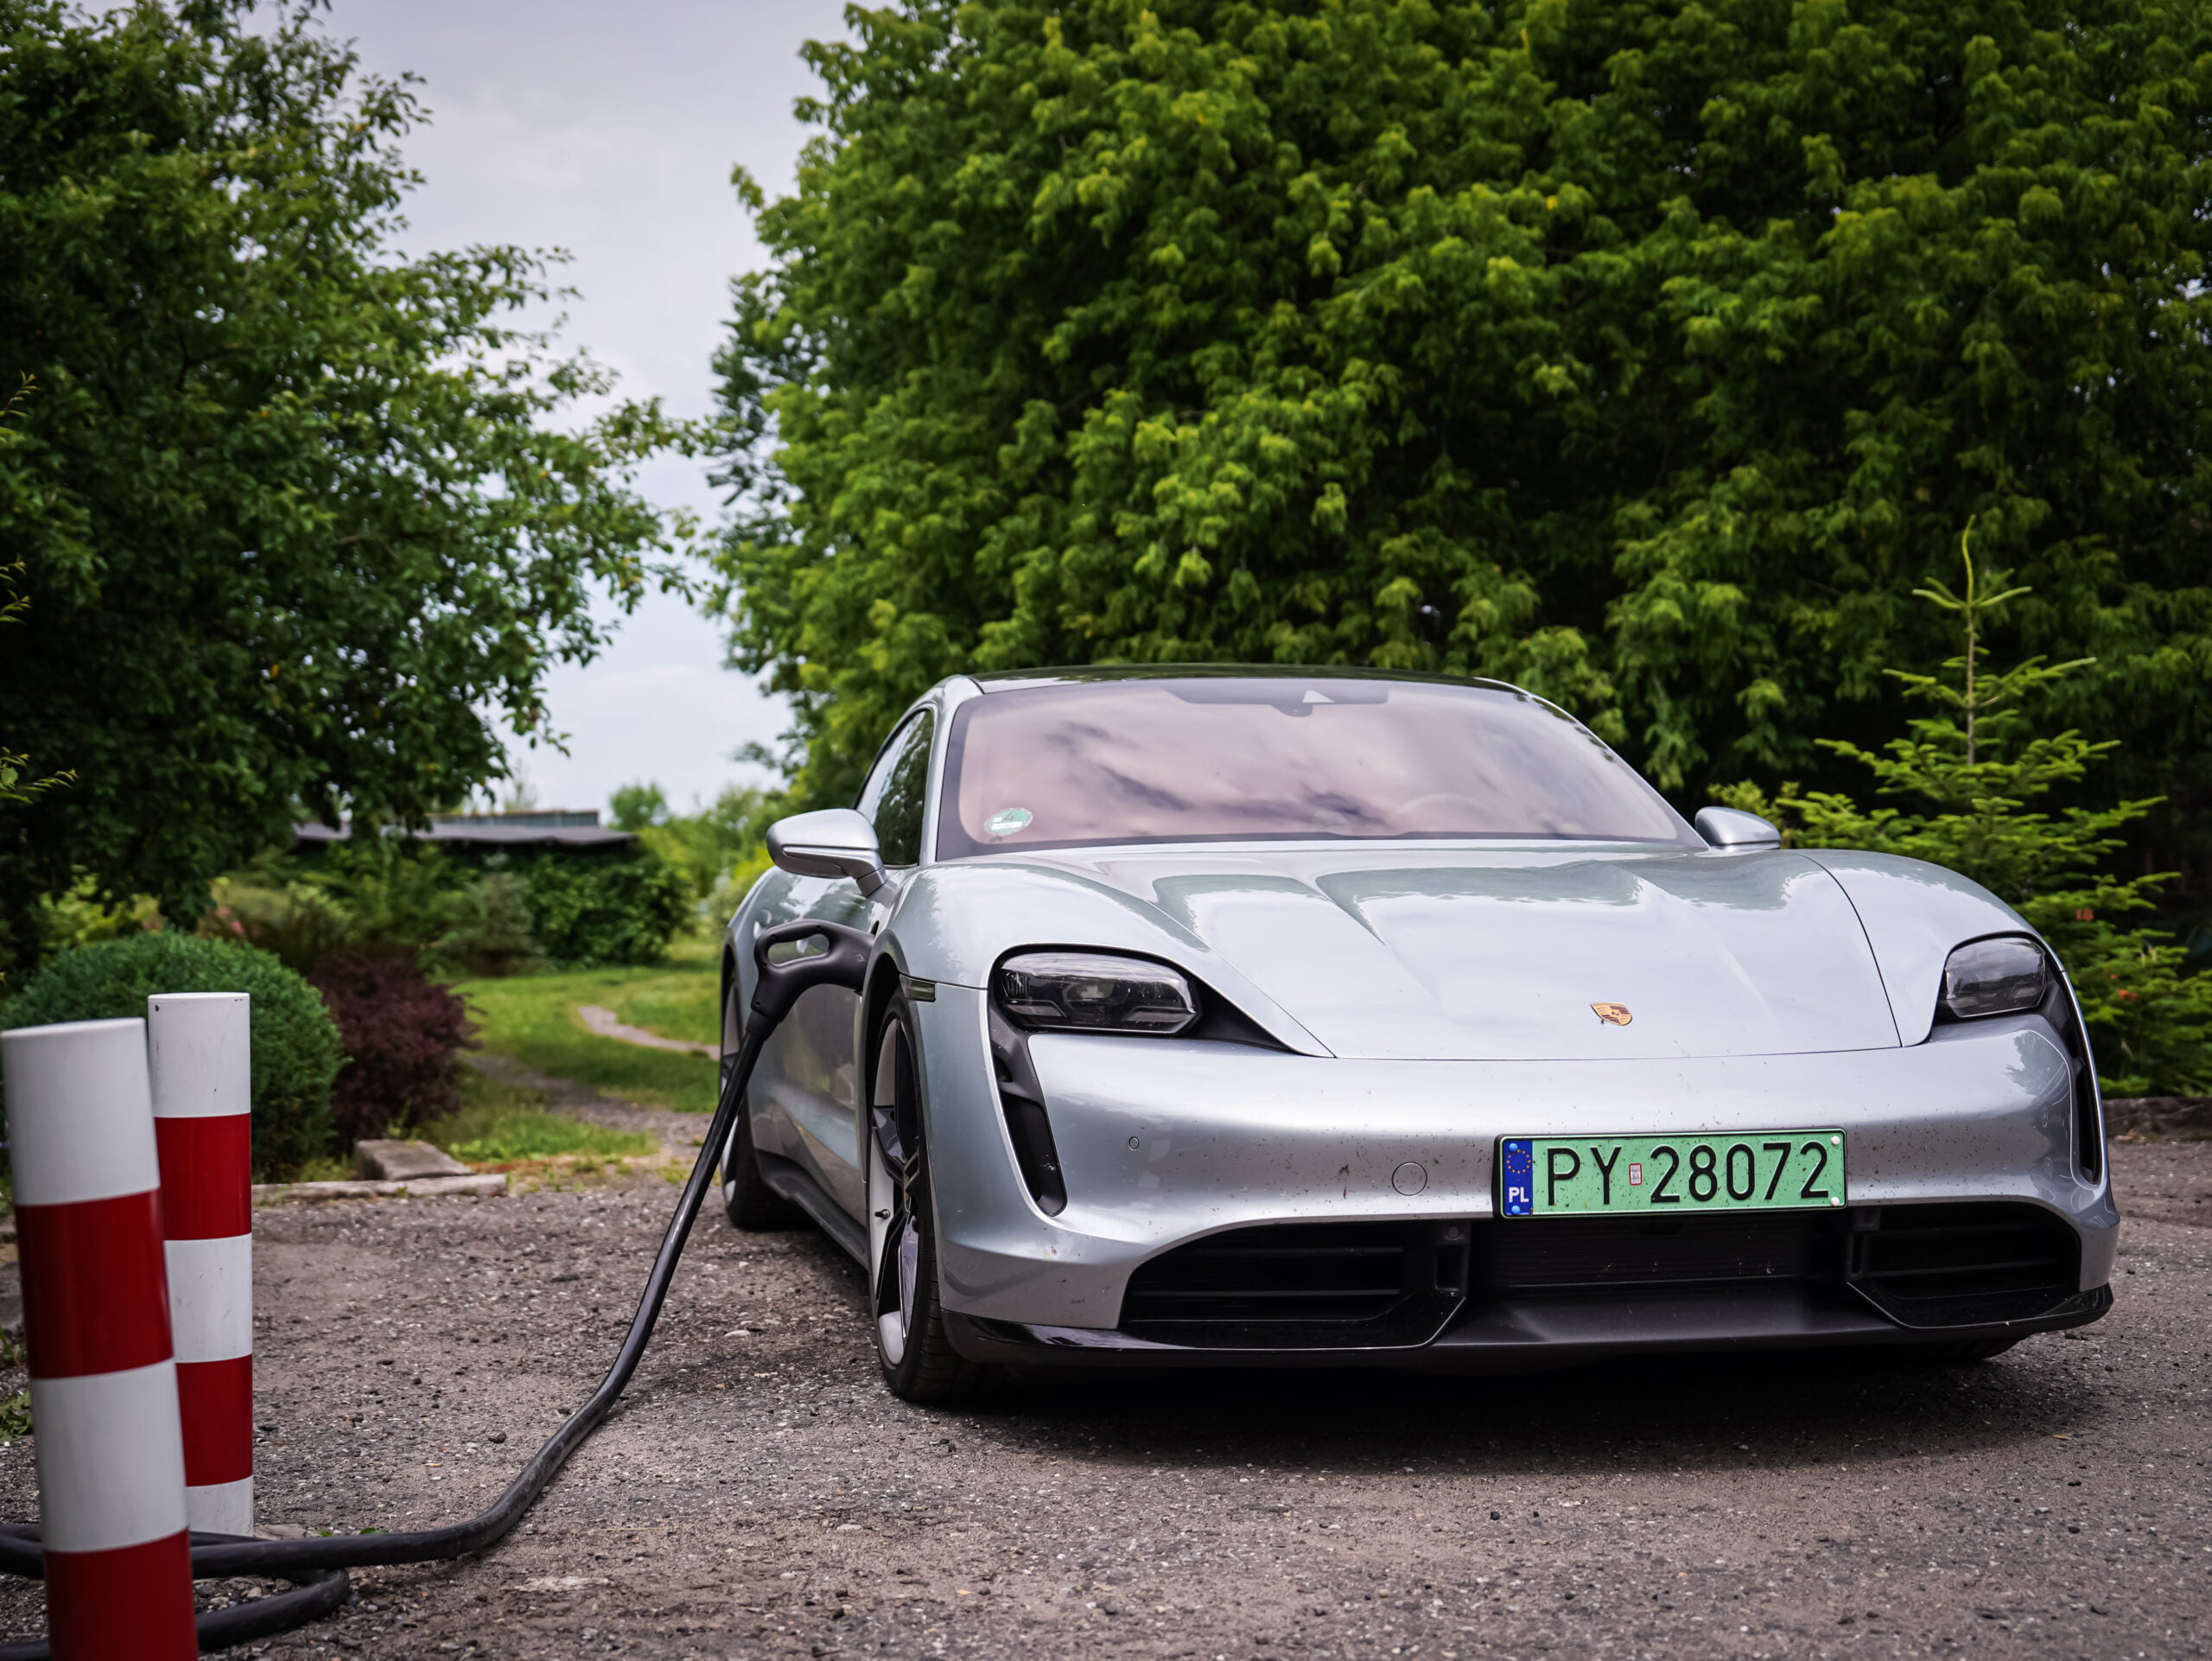 Srebrny sportowy samochód elektryczny marki Porsche podłączone do stacji ładowania na zewnątrz, otoczone zielenią.